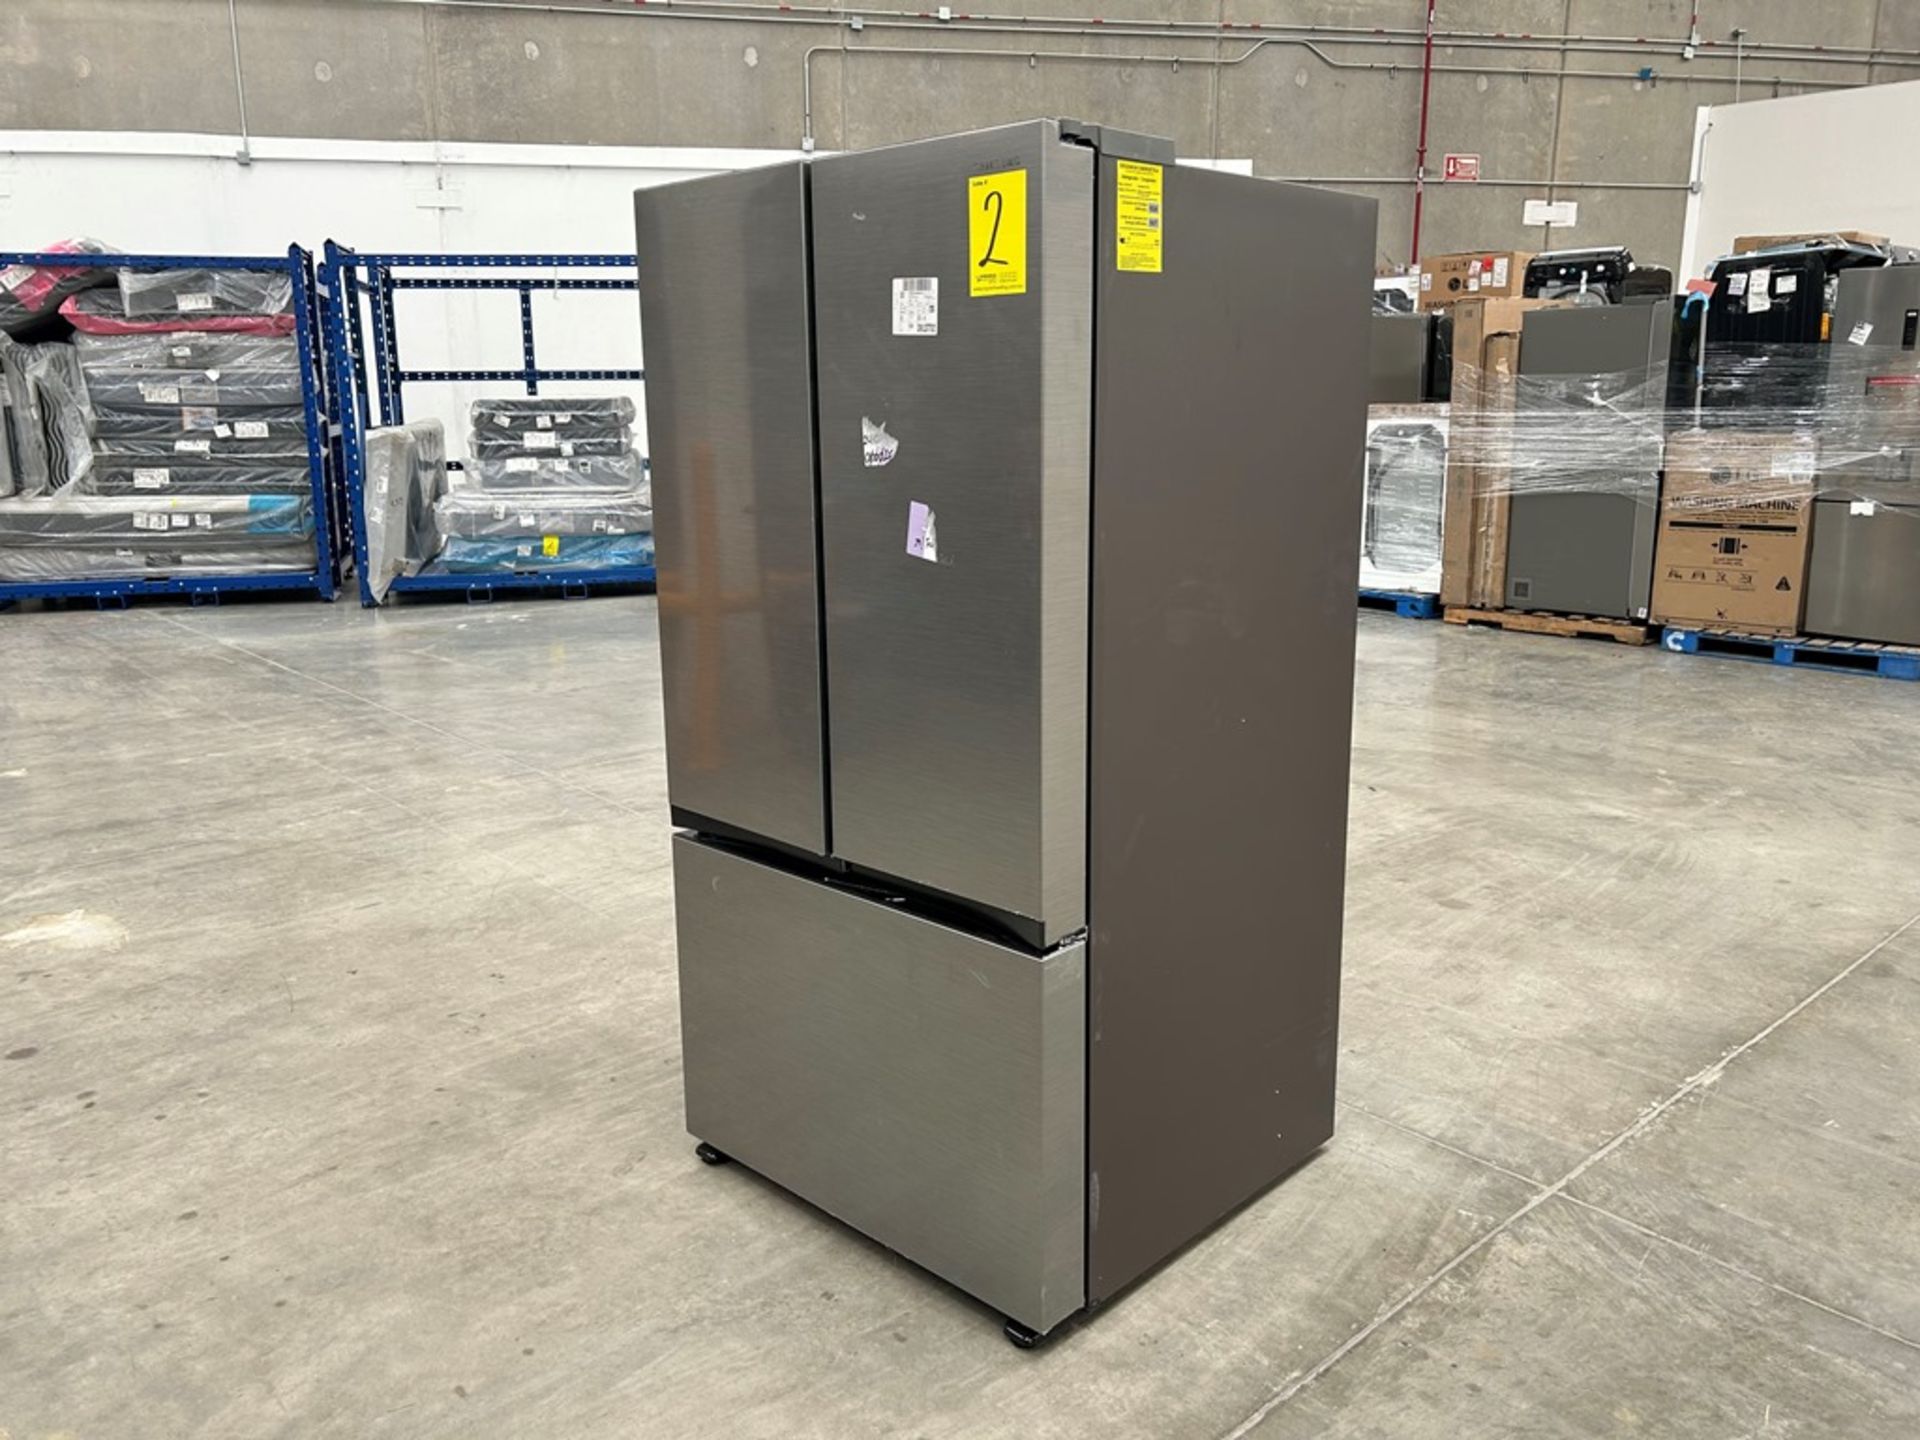 1 refrigerador Marca SAMSUNG, Modelo FR32CG5A10S9EM, Serie 1494L, Color GRIS (No se asegura su func - Image 2 of 5